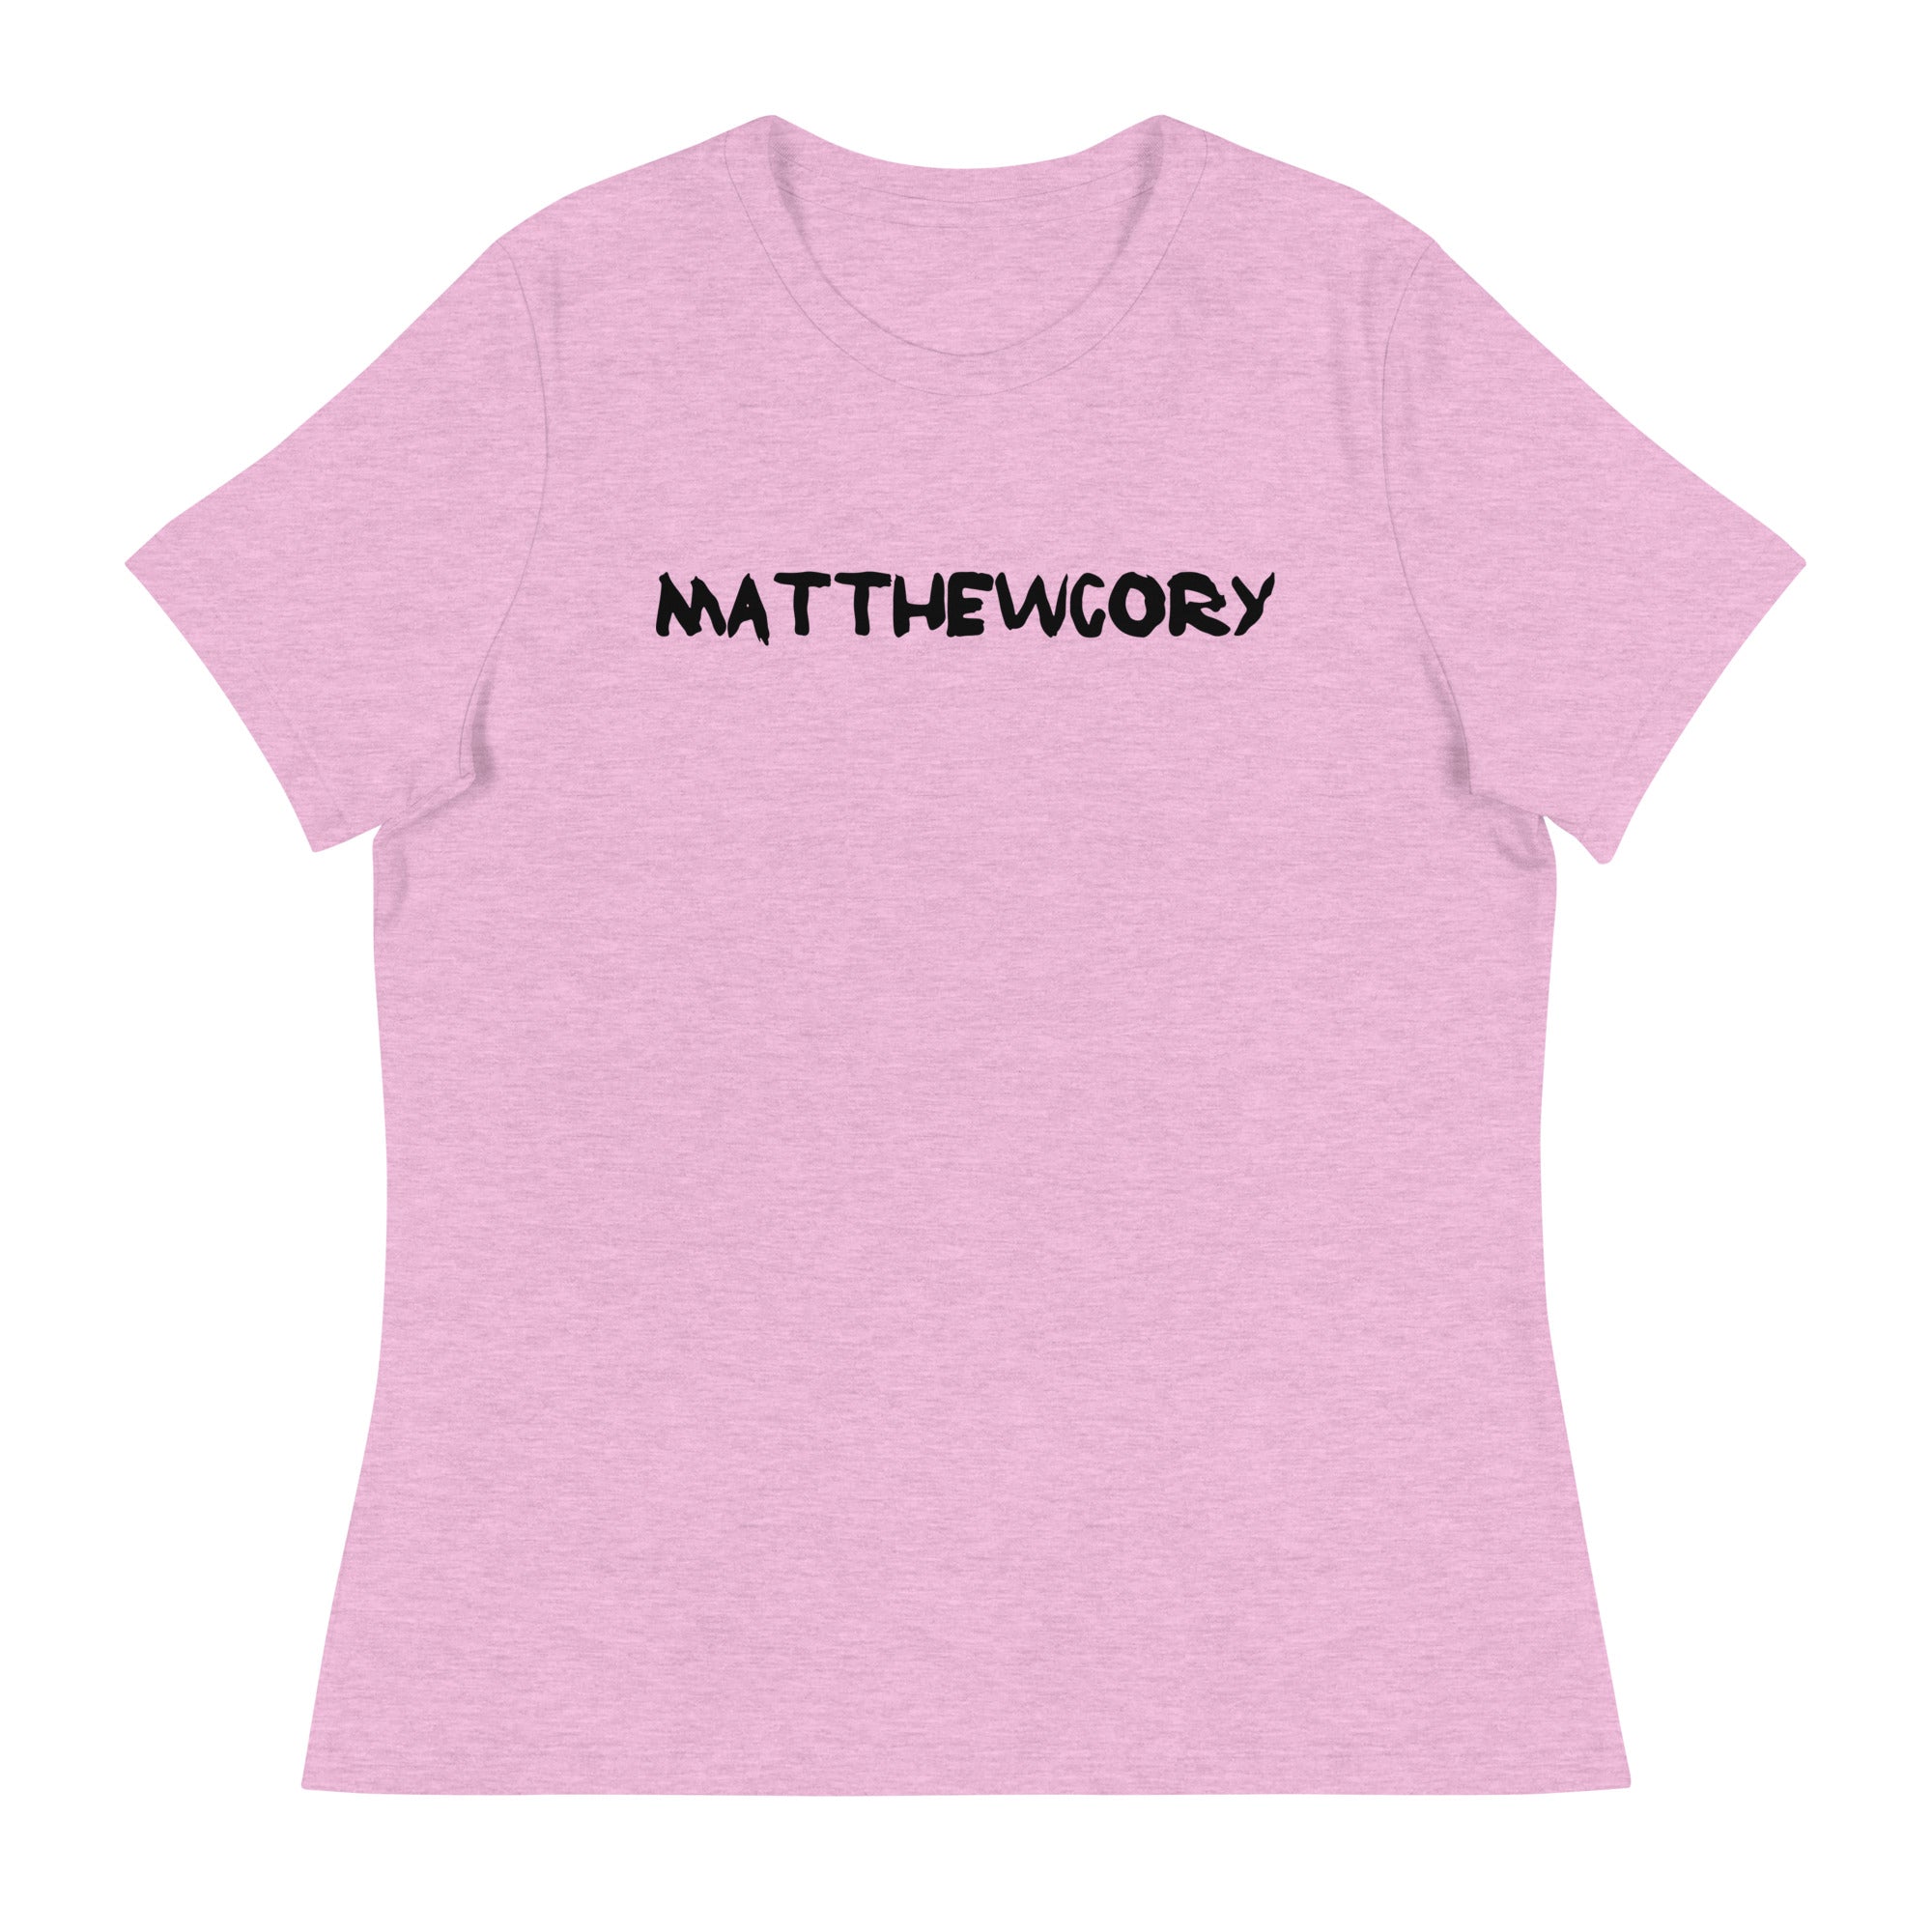 Thriving Faith Women's Relaxed T-Shirt (Matthew Cory Text)